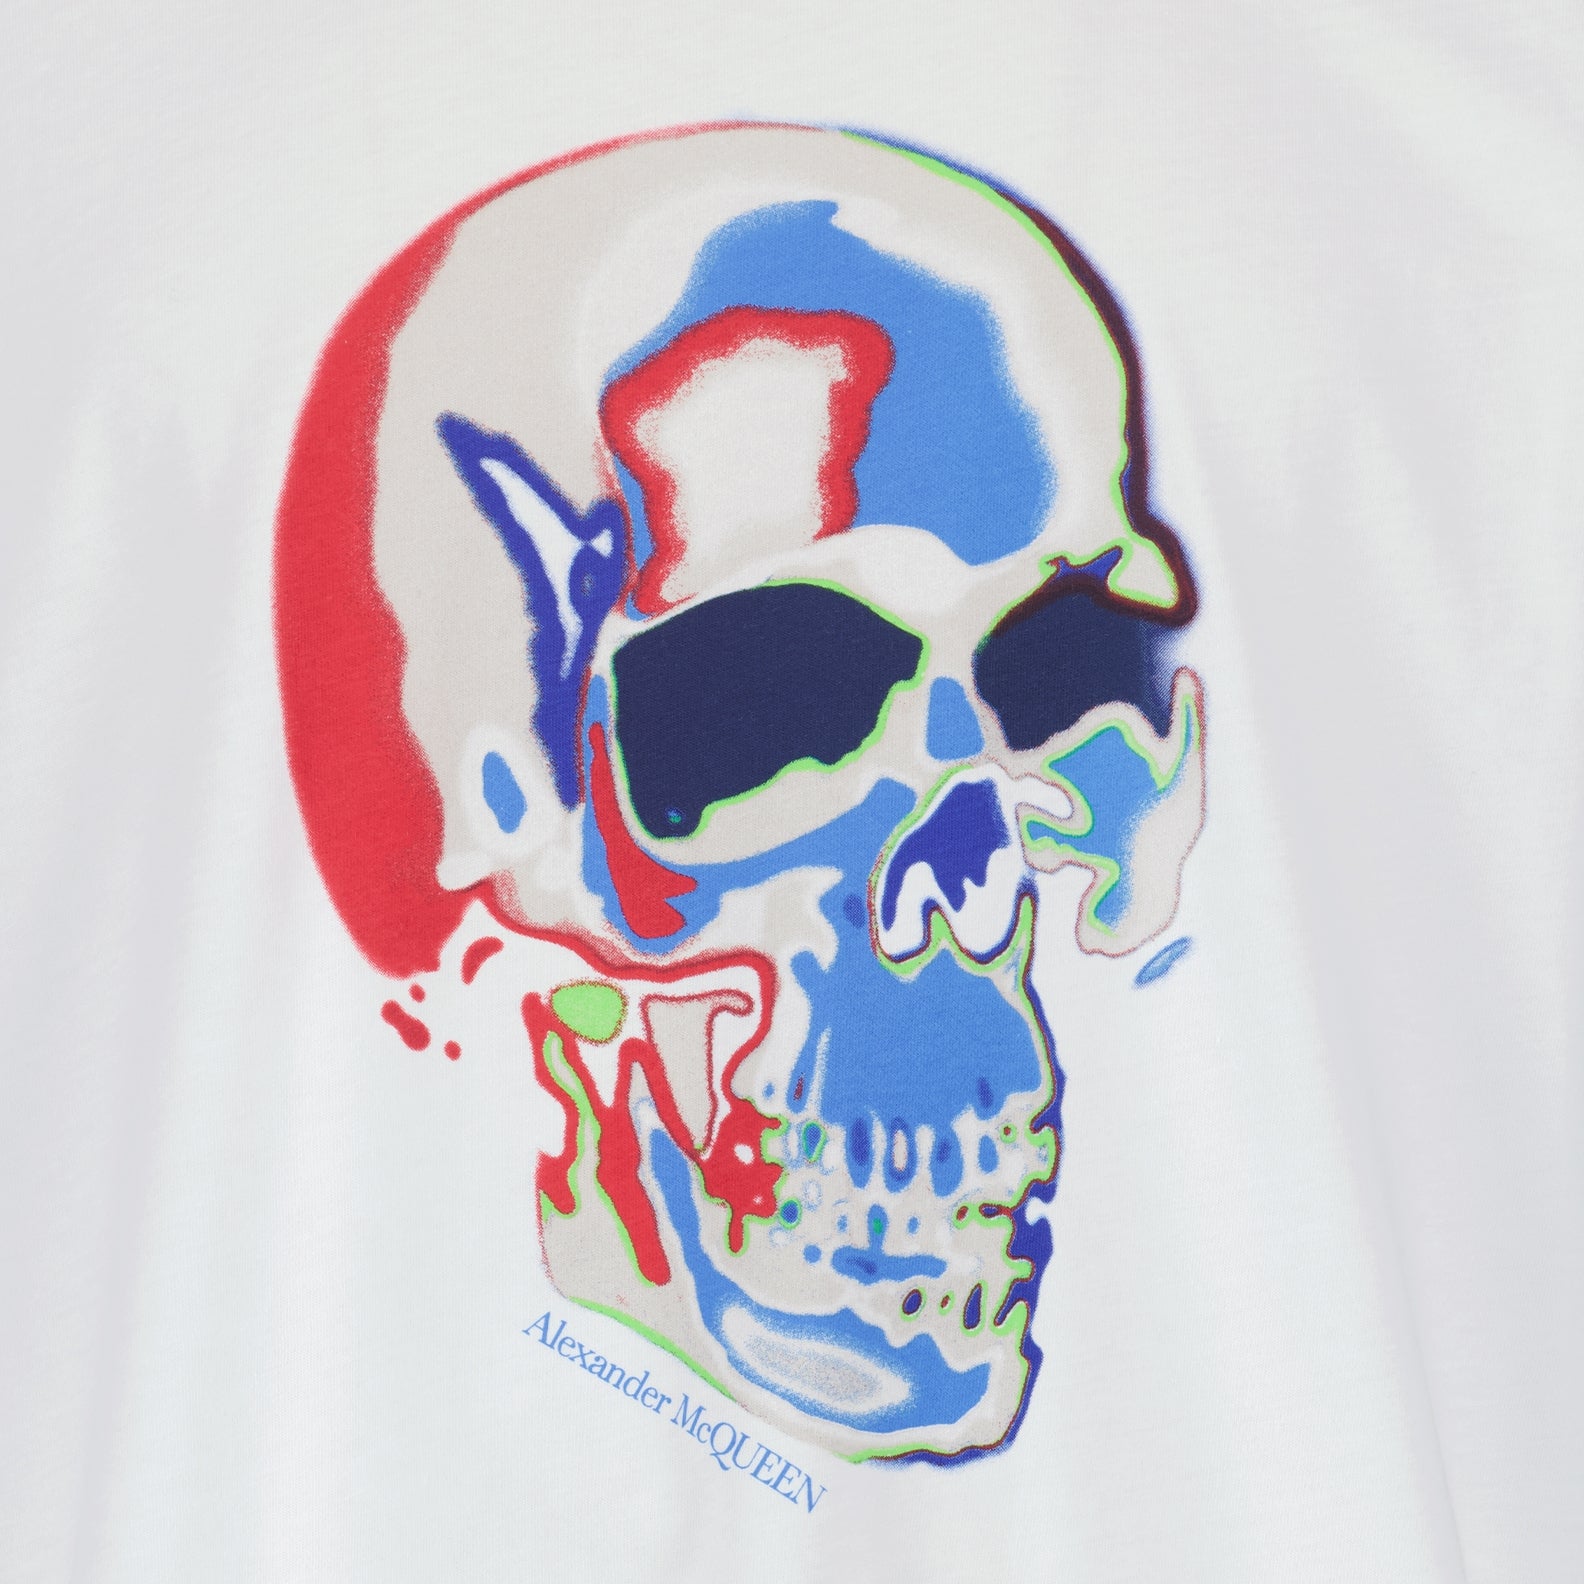 T-shirt Skull